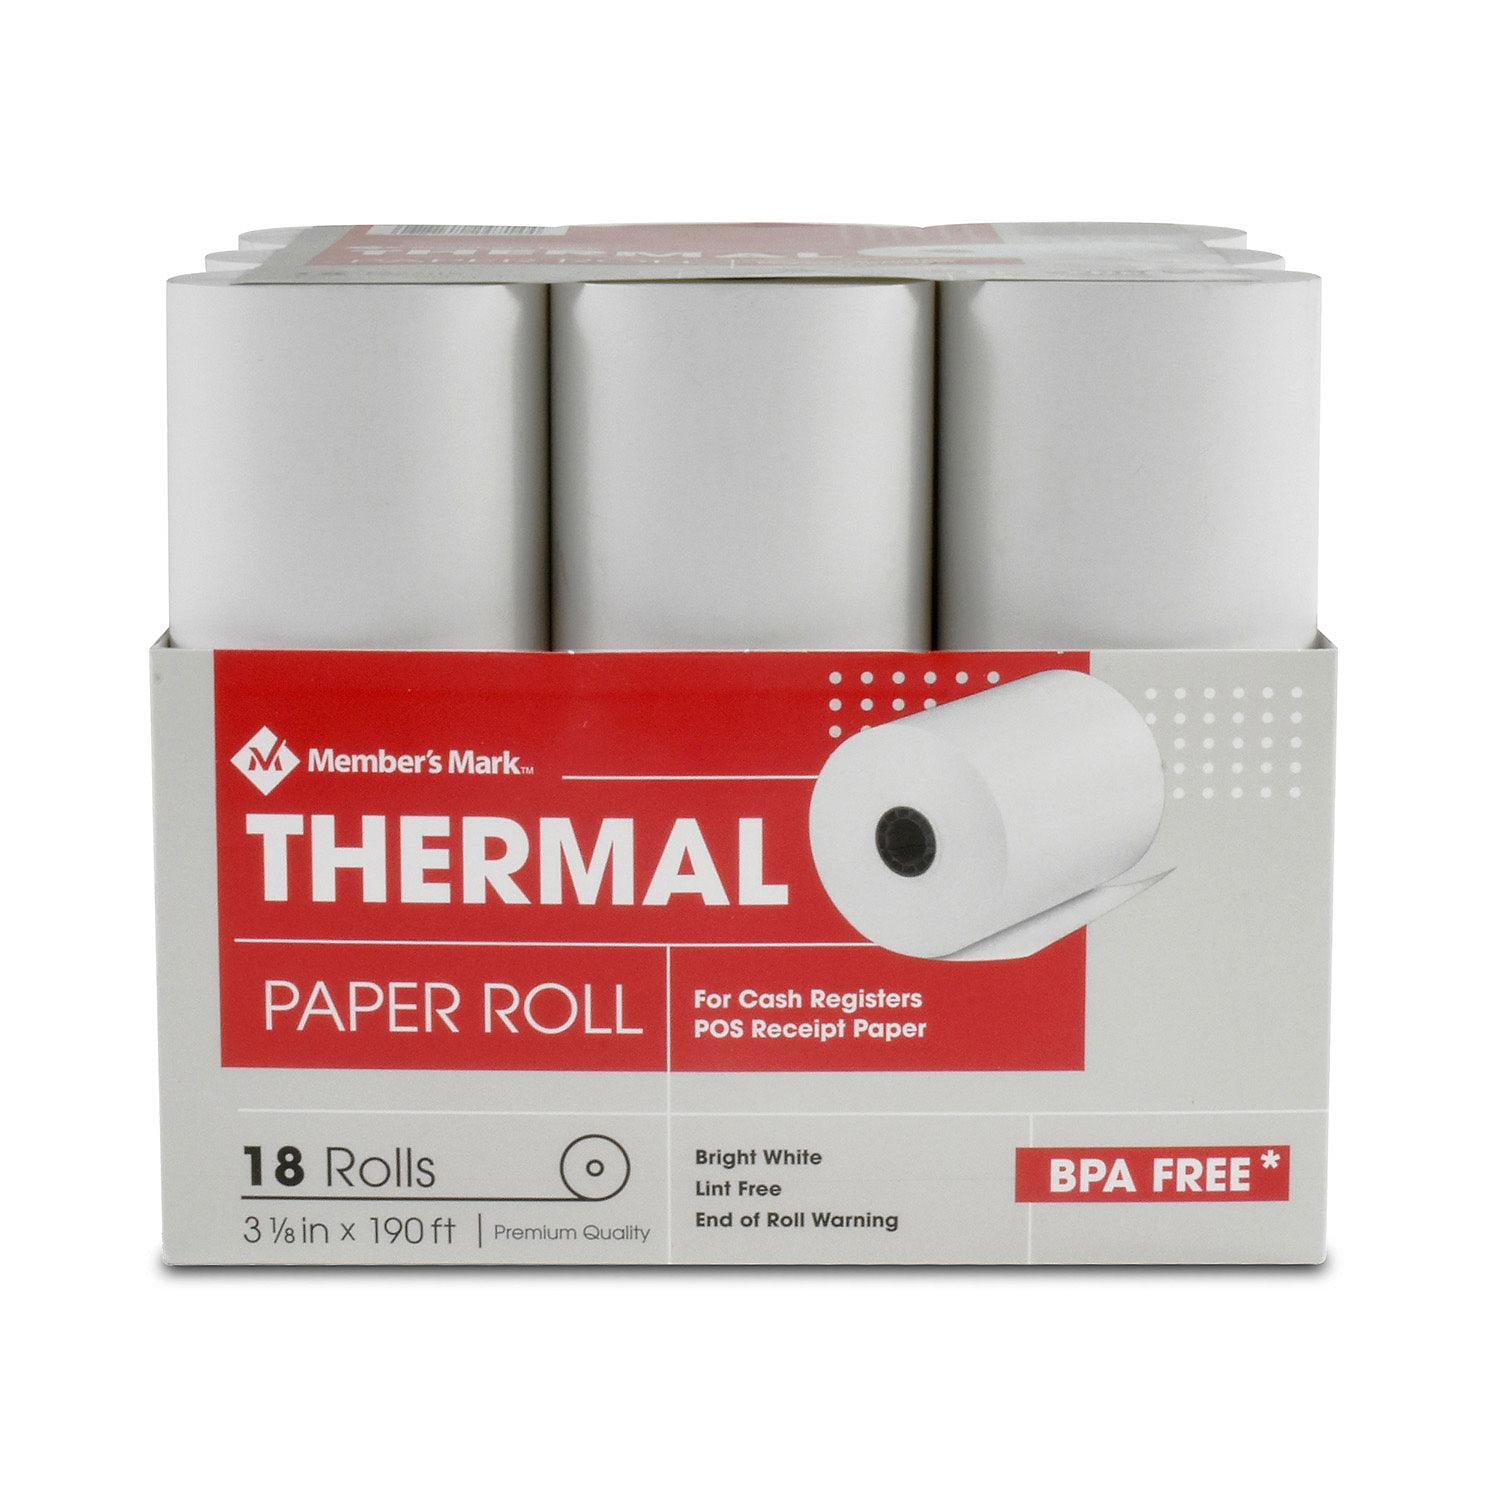 paper-rolls-thermal-receipt-by-mm-3-1-8-x-190-18-rolls-walmart-walmart